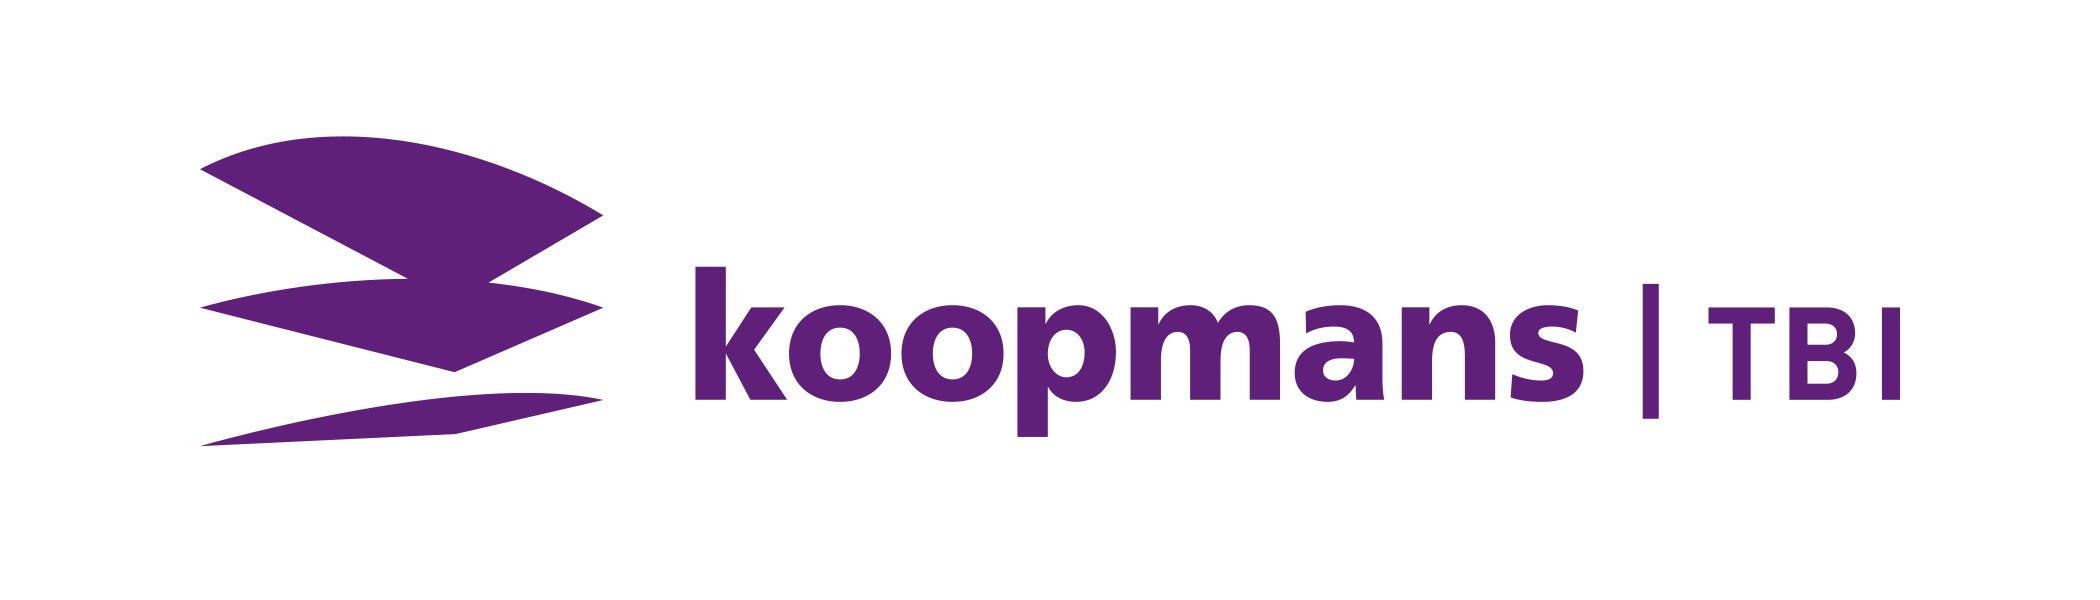 Logo_TBI-koopmans_RGB